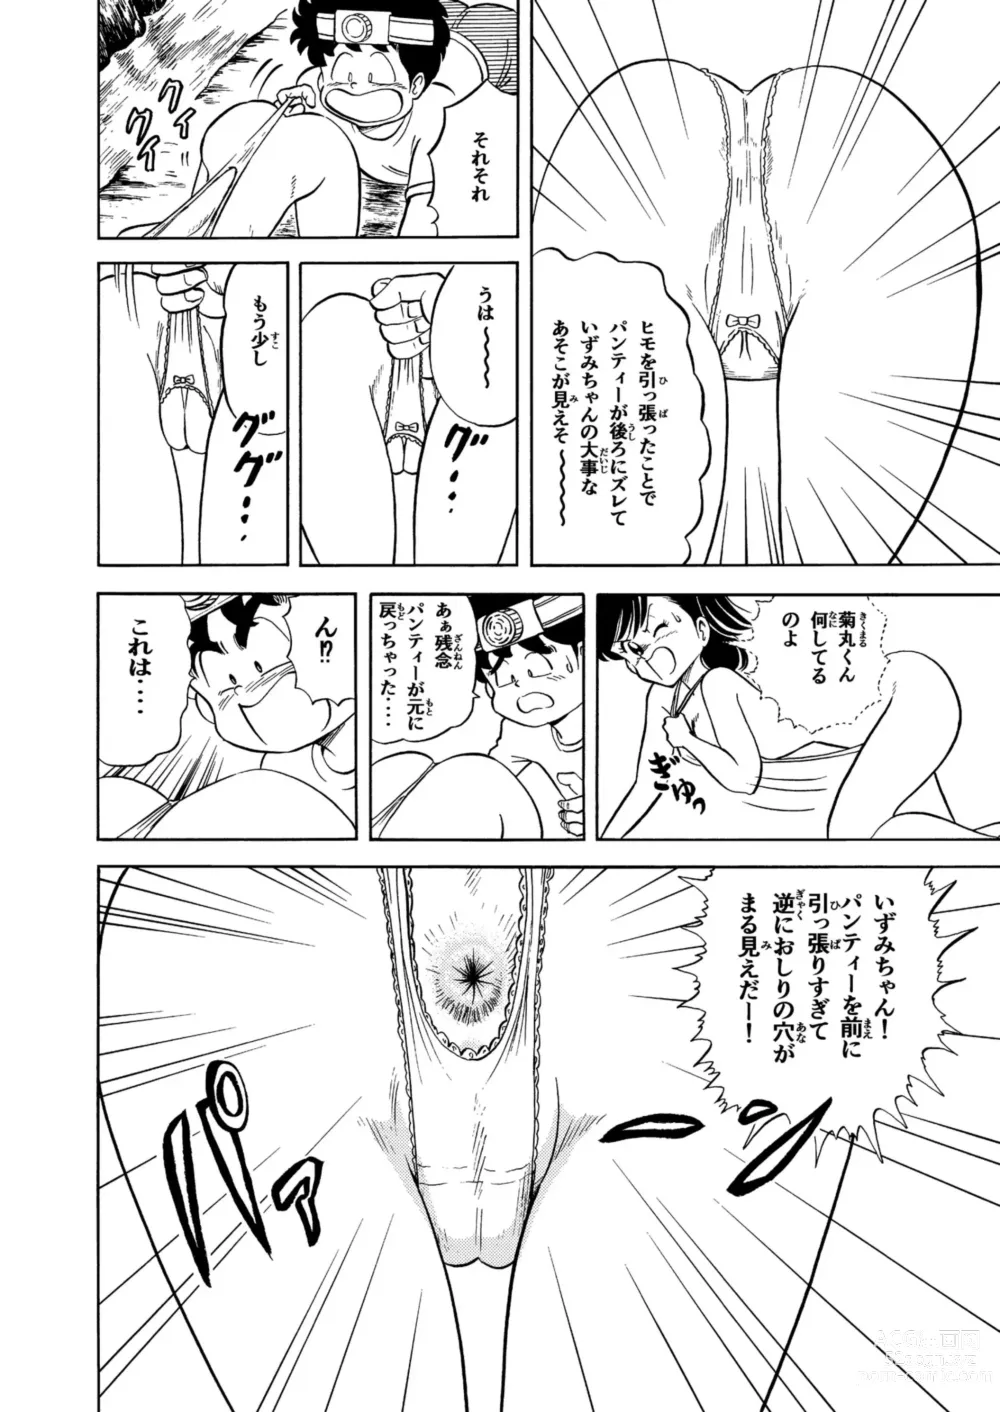 Page 9 of doujinshi Hard Ecchi Izumi-chan 2